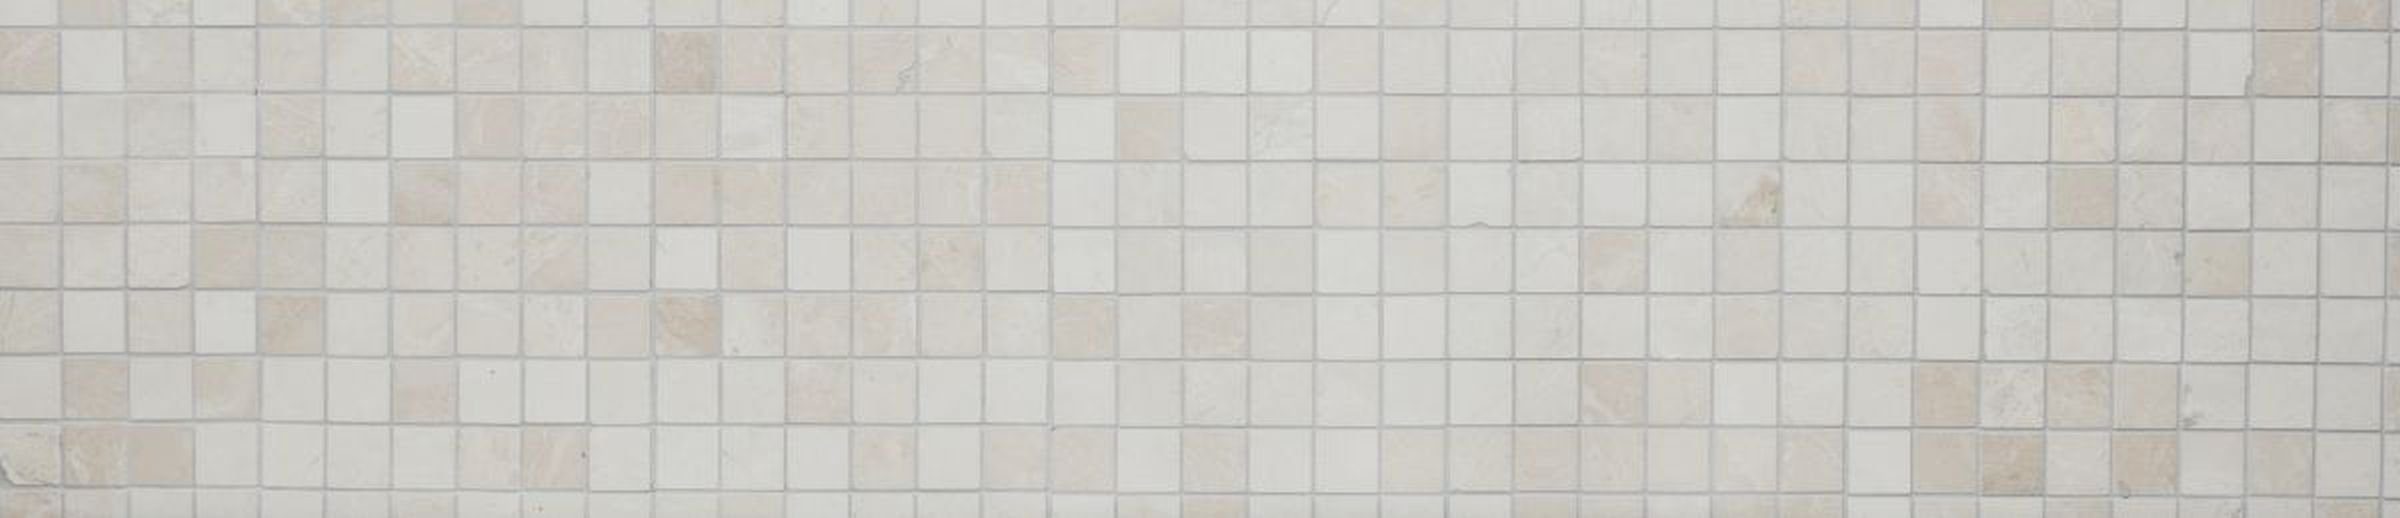 Mosani Bodenfliese Marmor Mosaik Fliese elfenbein creme Naturstein hellbeige